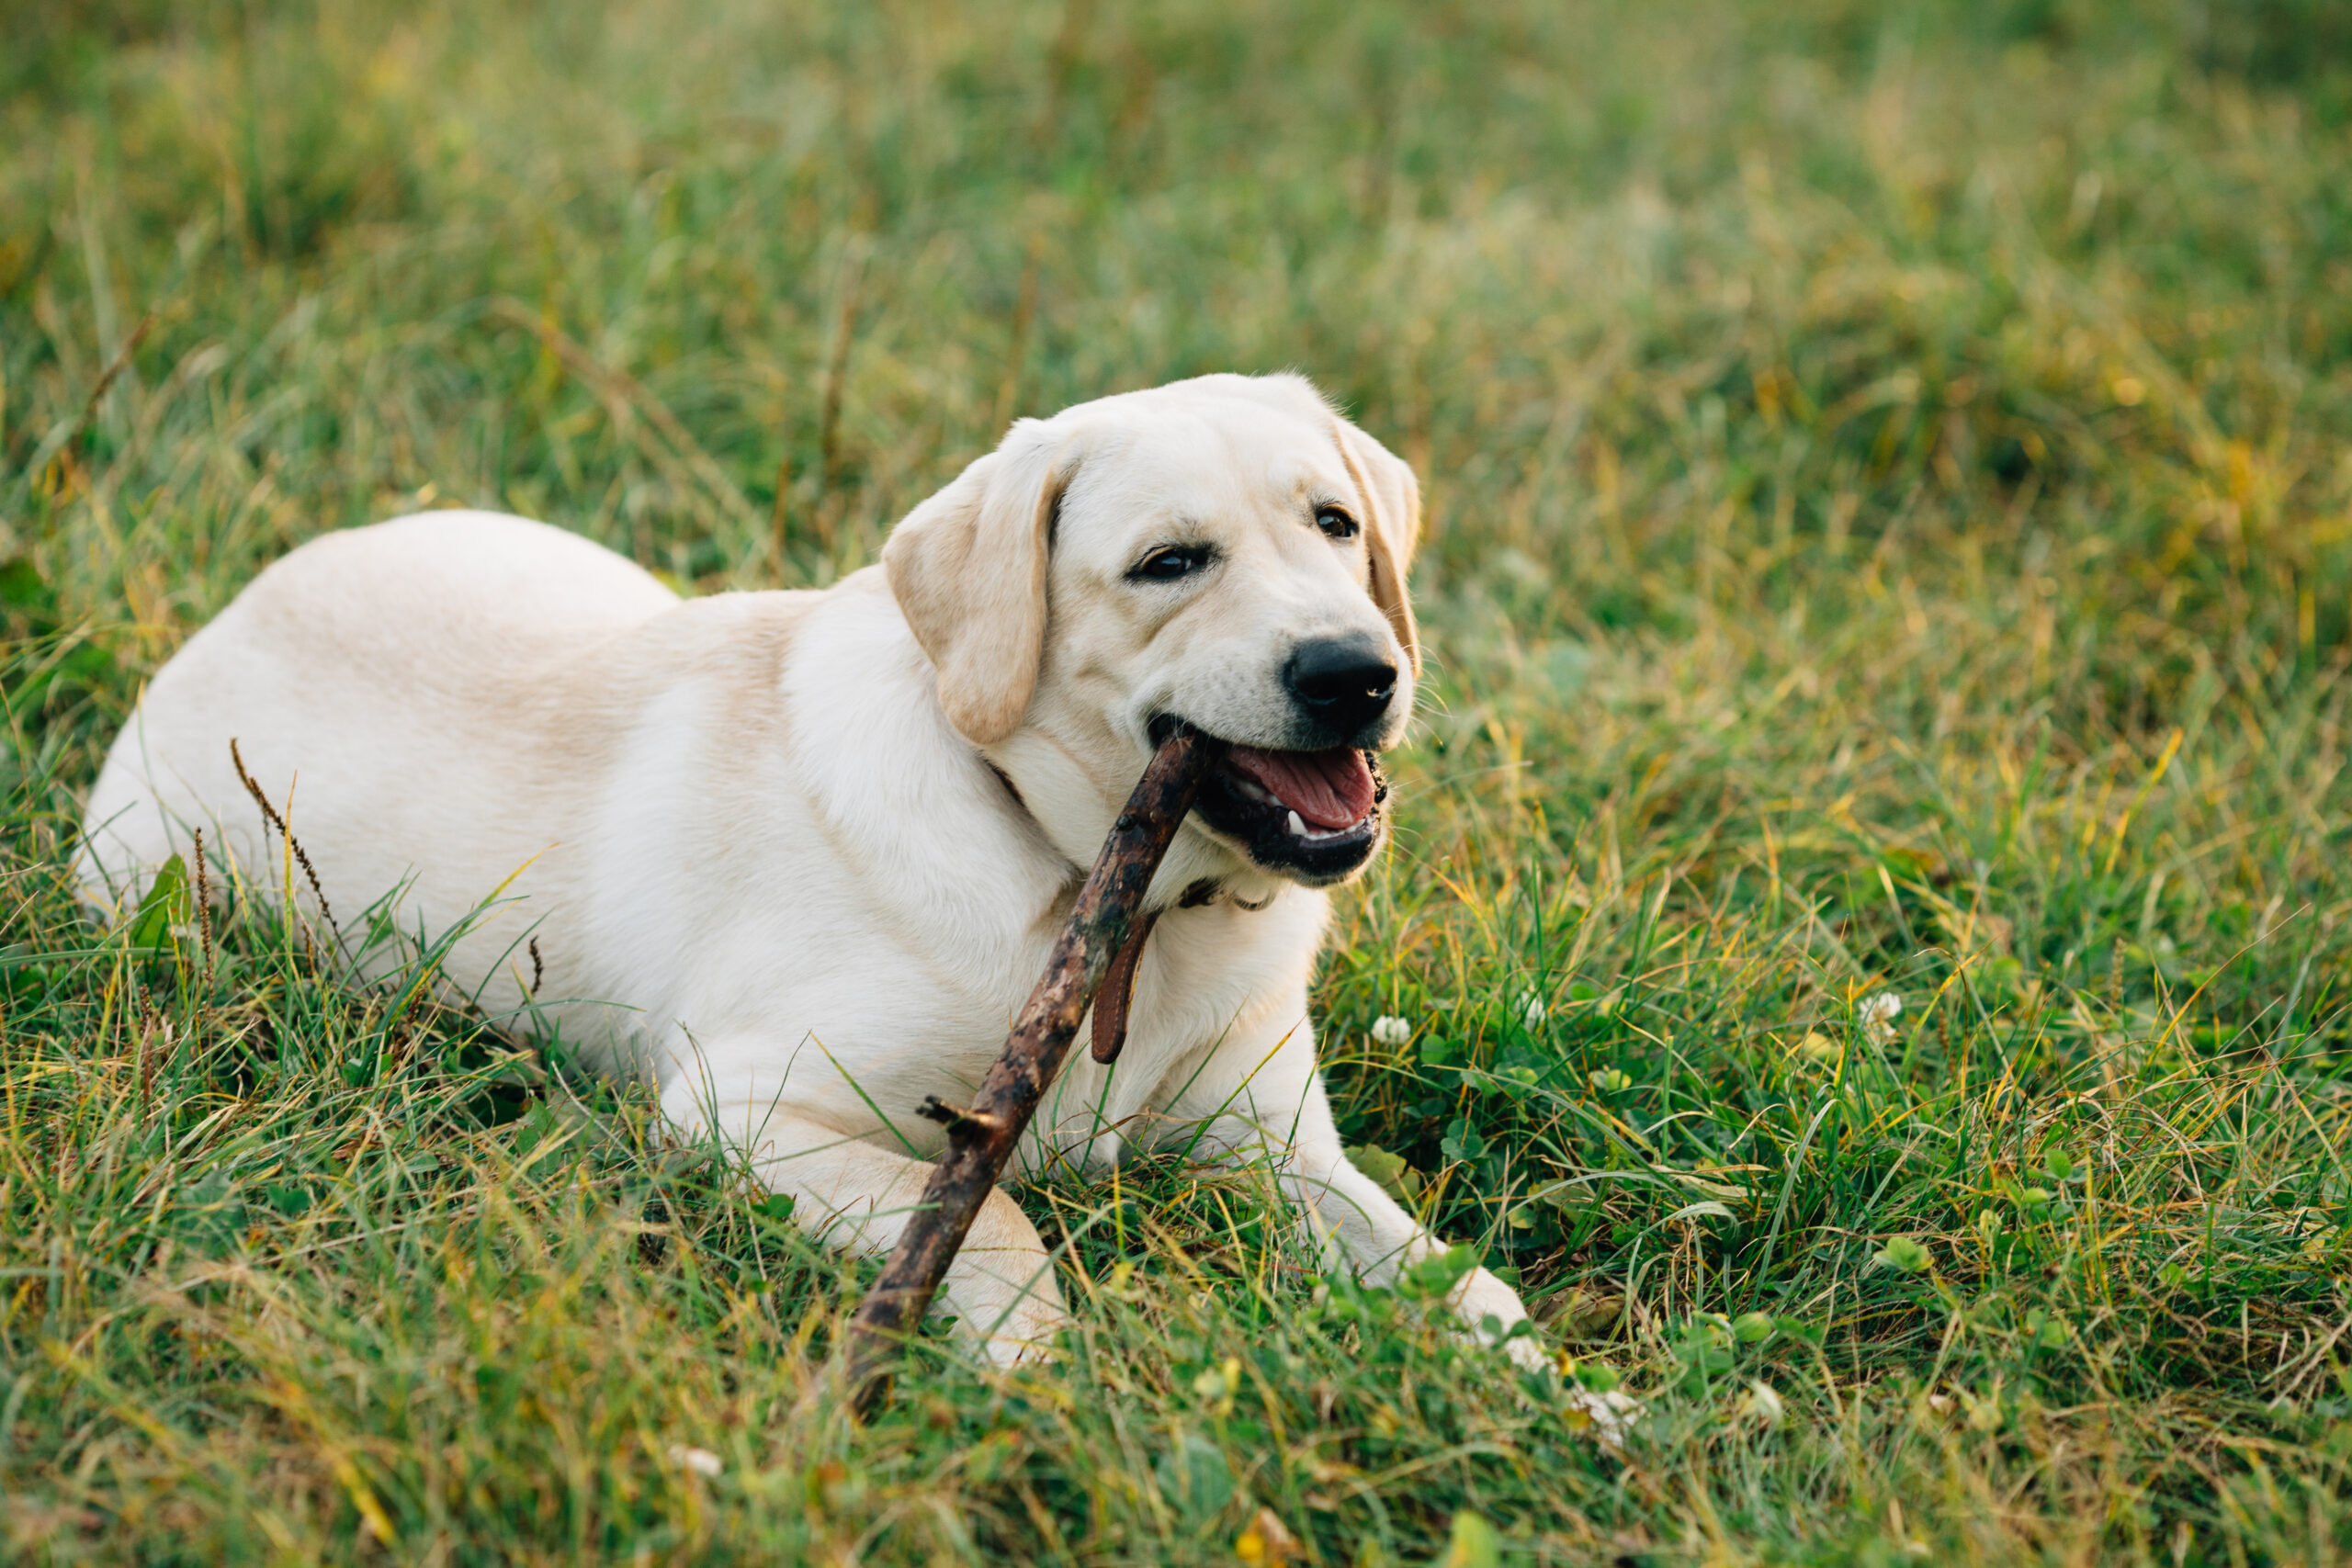 Dog Labrador retriever lying on grass chews stick